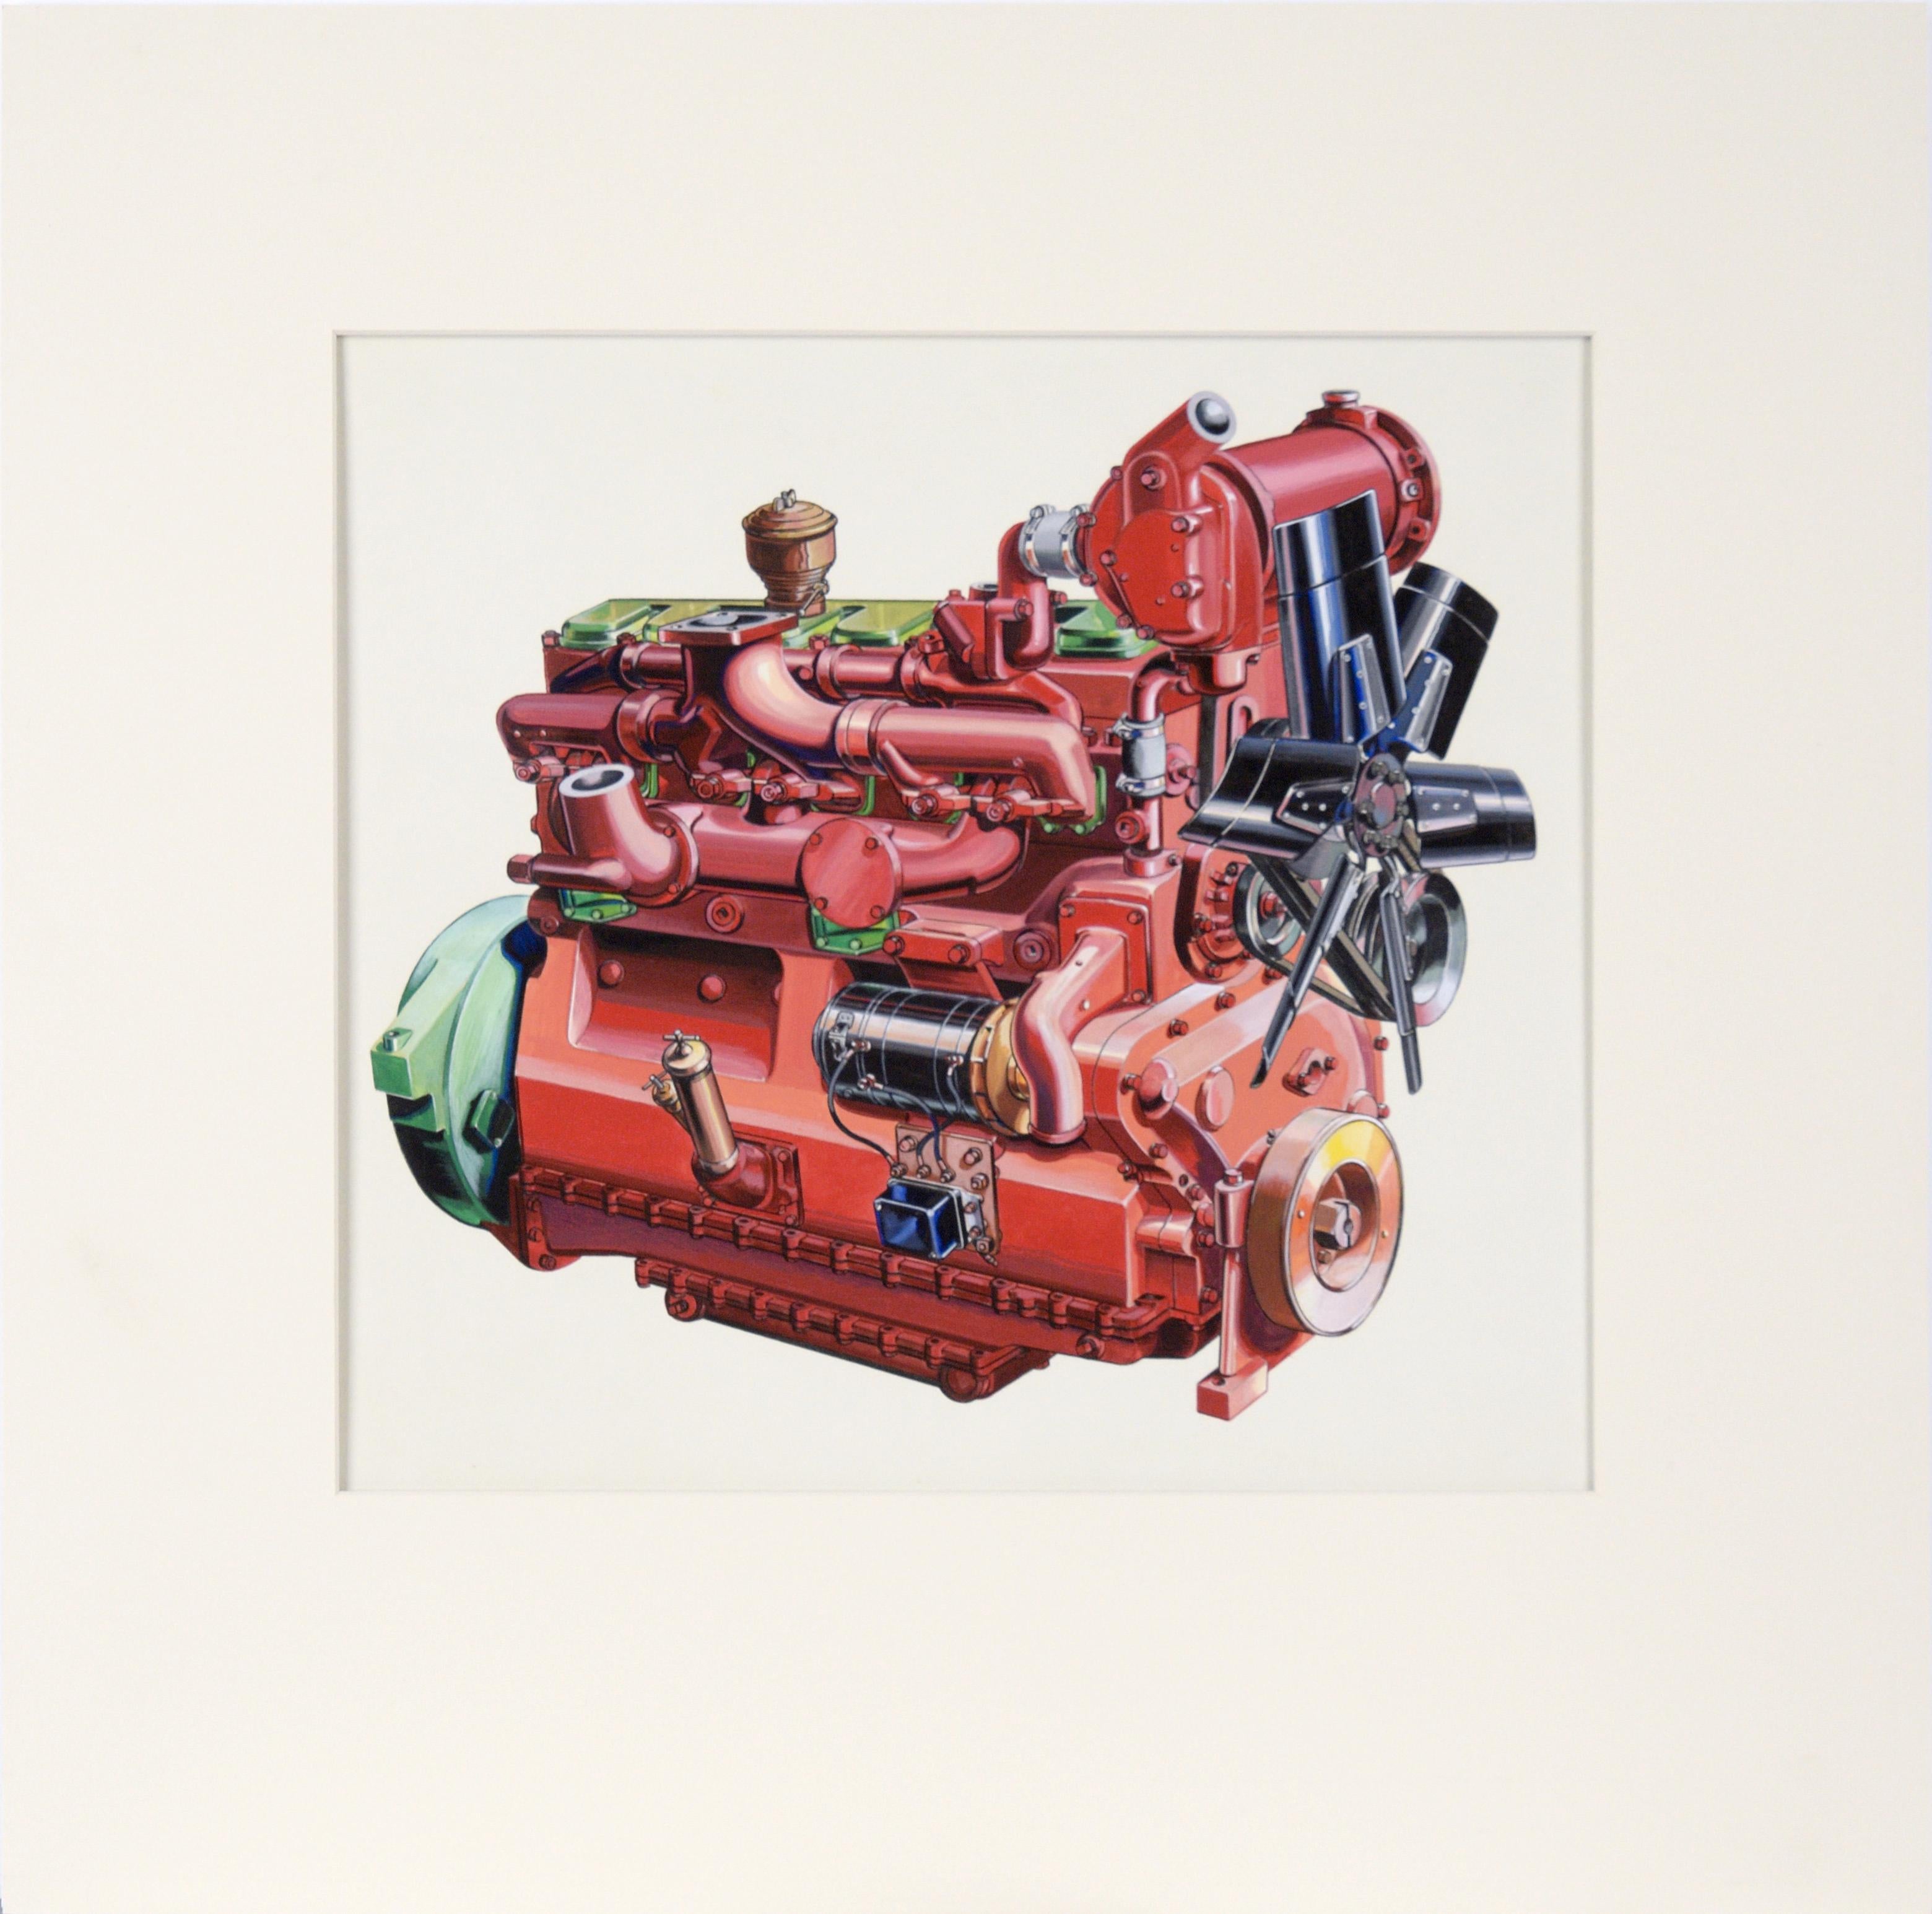 Illustration technique d'un moteur Ford Lehman à la gouache sur carton lourd - Art de Joseph Yeager